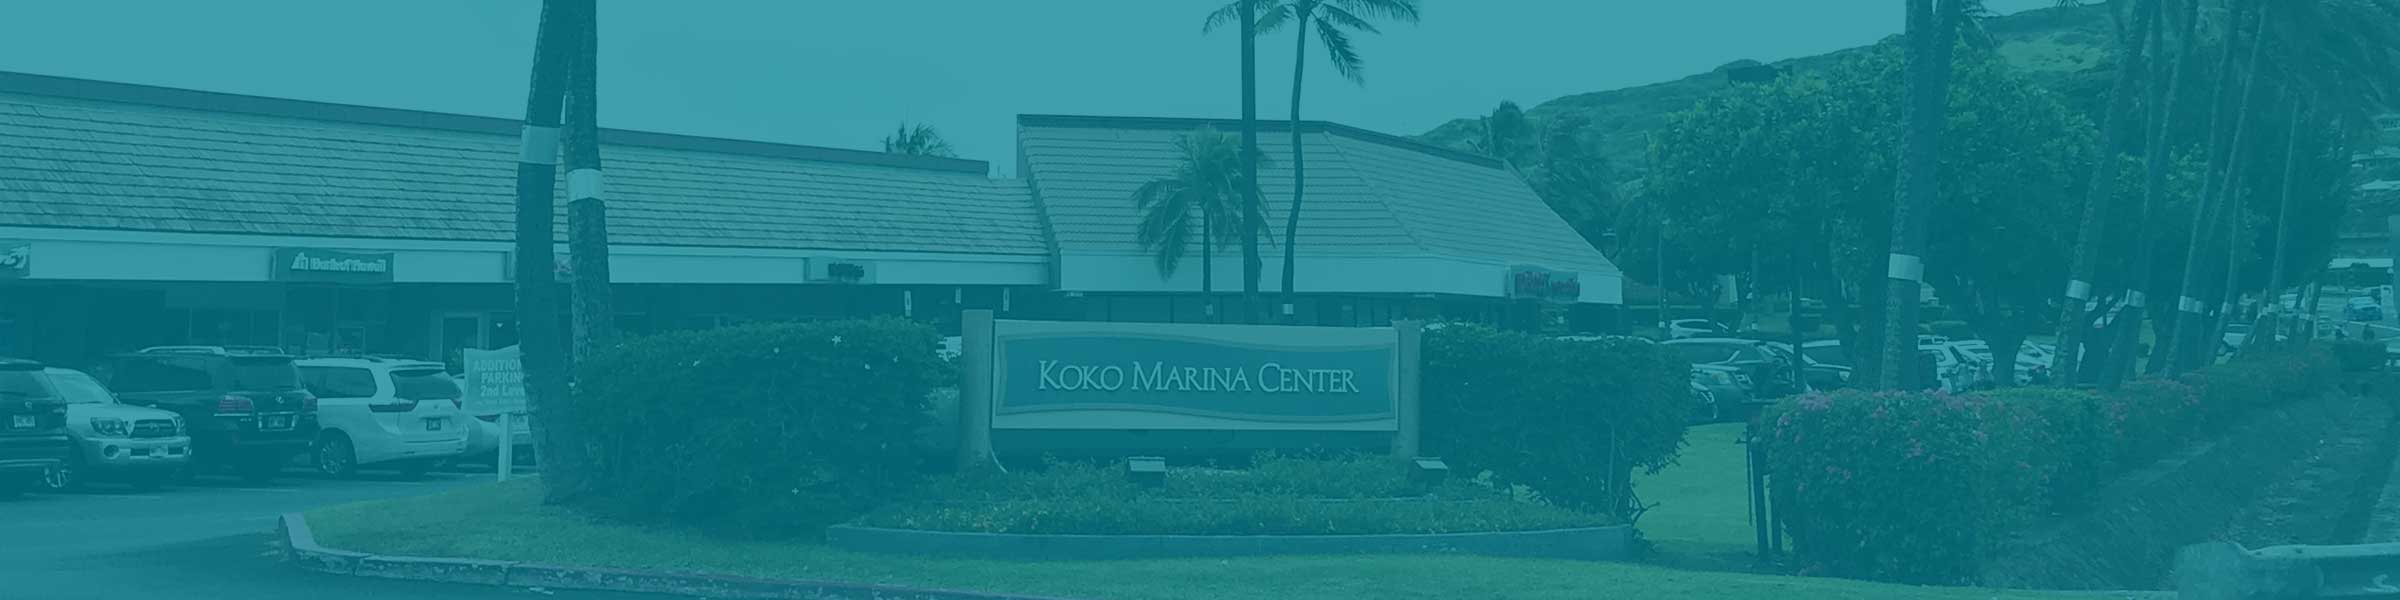 Makai Entrance to Koko Marina Center